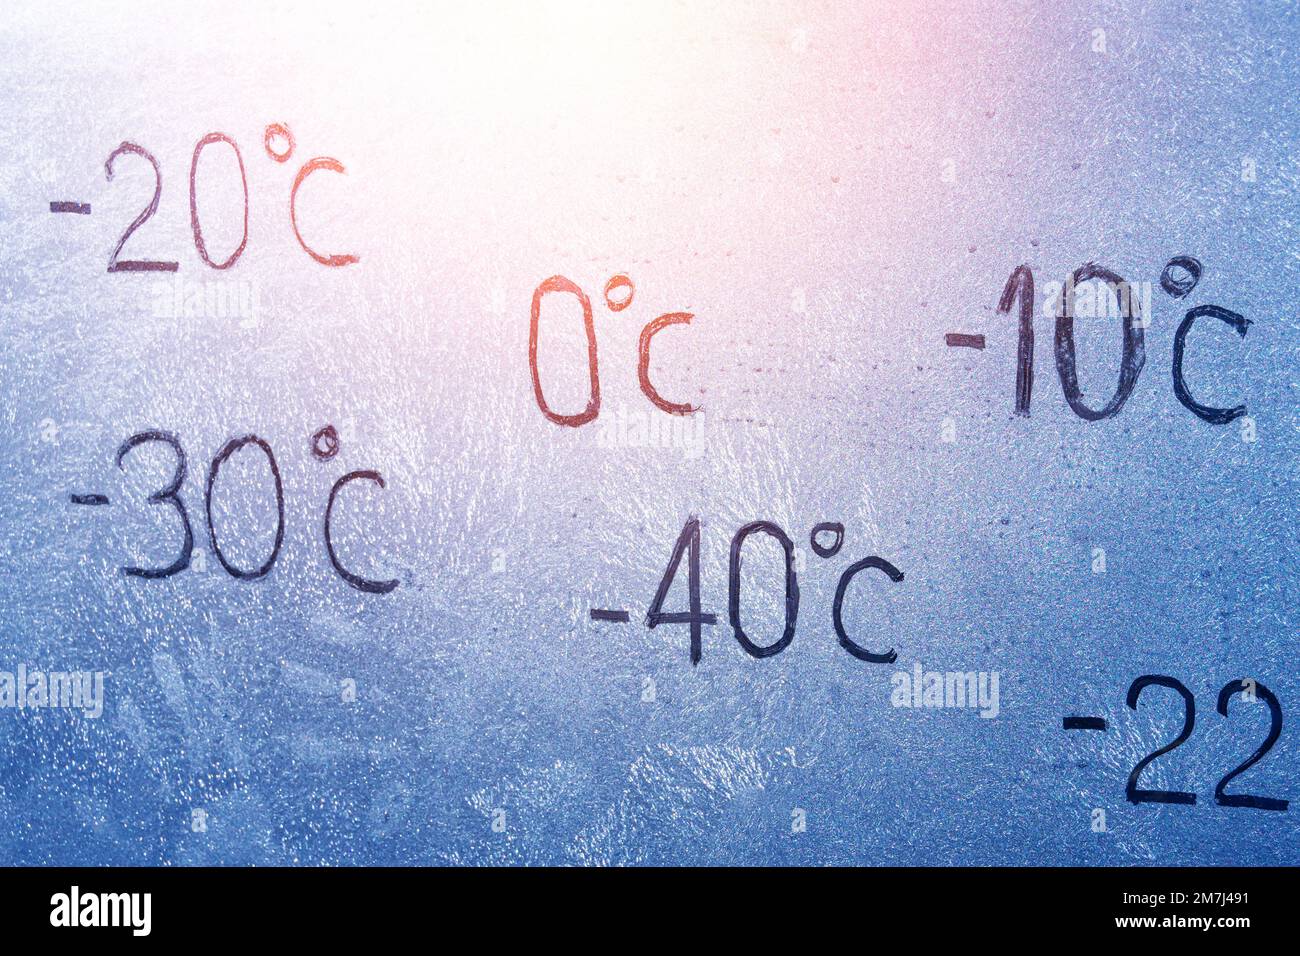 Grados -10 -20 -30 - 40 0 grados Celsius número de letras en vidrio helado cubierto con hielo y escarcha. El concepto de clima frío extremo Foto de stock